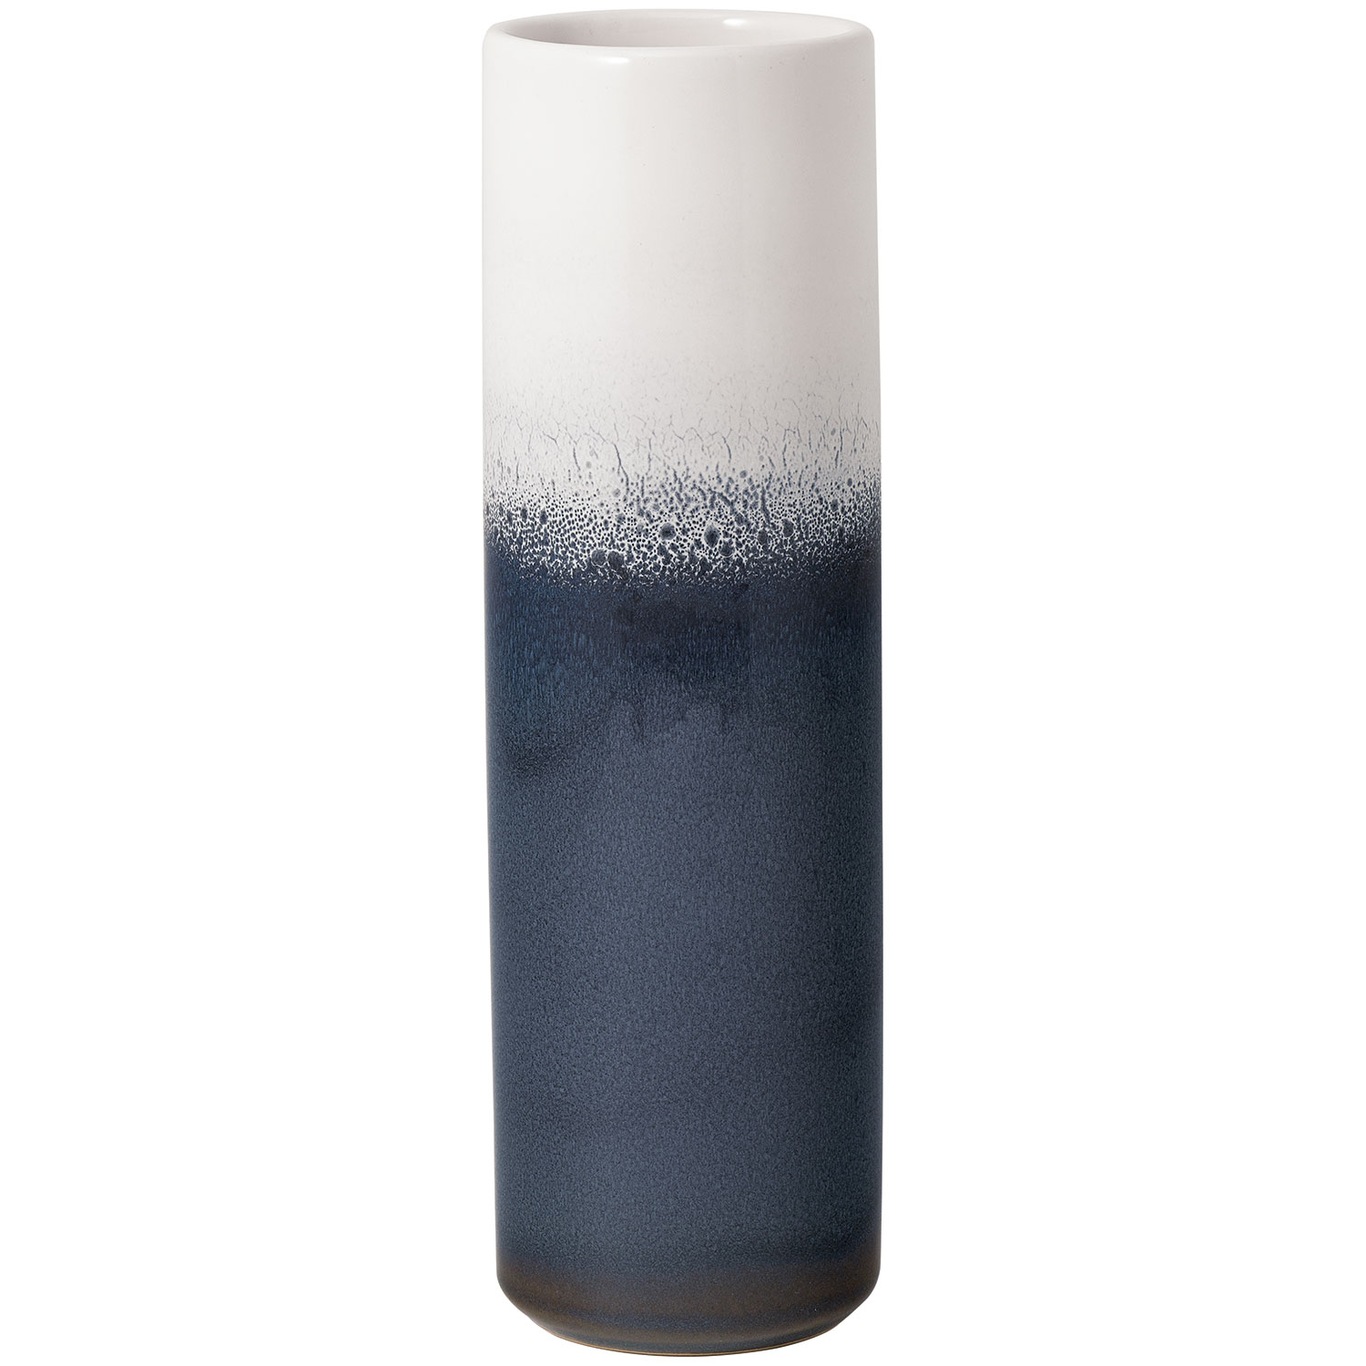 Lave Home Cylinder Vas Blå, 7,5x25 cm